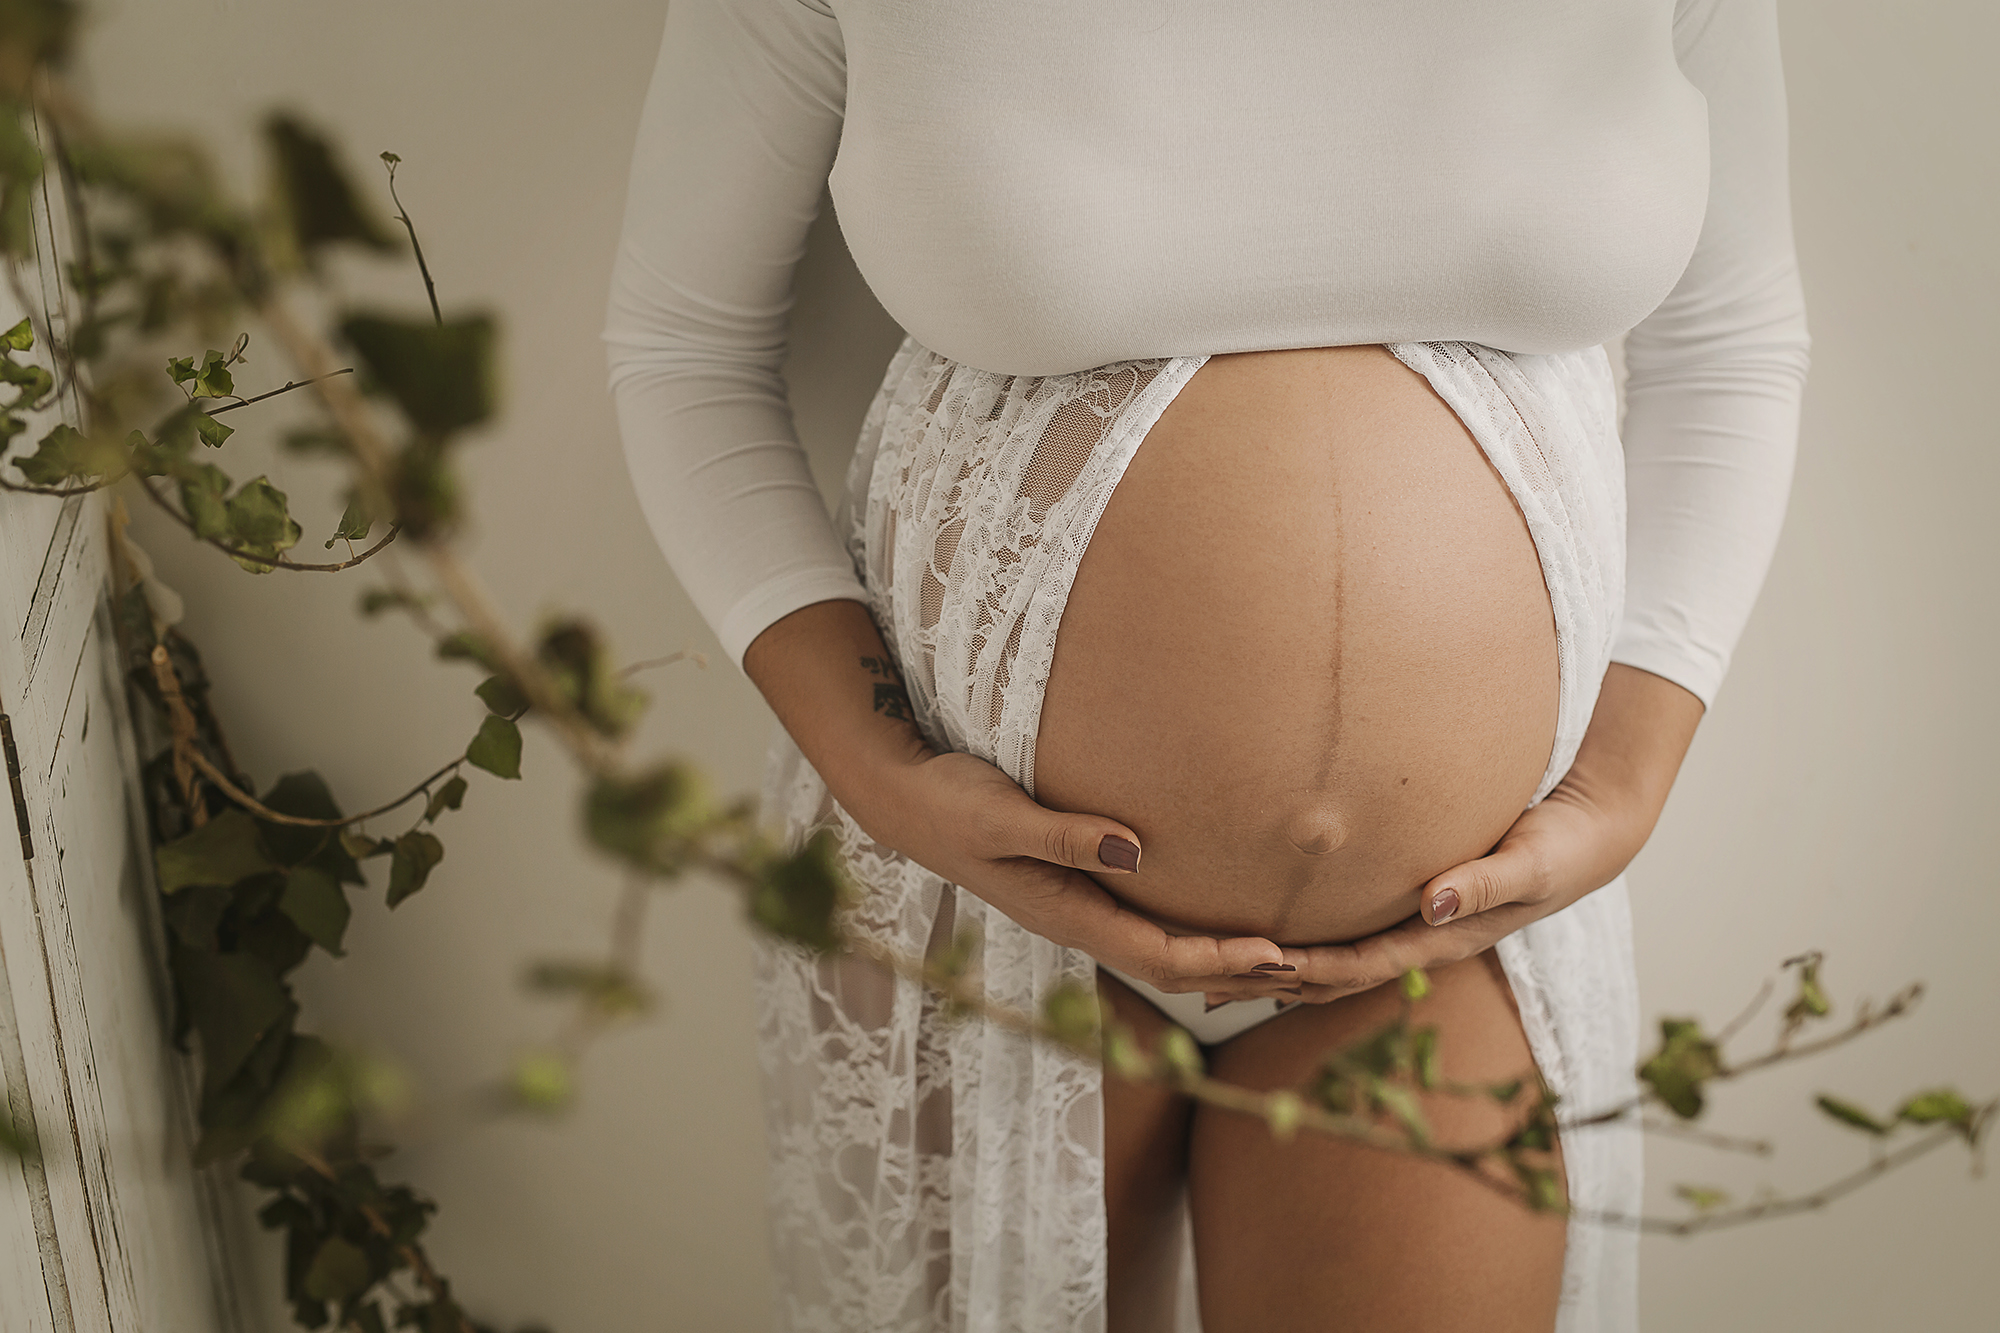 arga espera, embarazo de 9 meses, sesión de embarazo es estudio en zaragoza, sesión de embarazo en exterior en zaragoza, foto de embarazo de familia